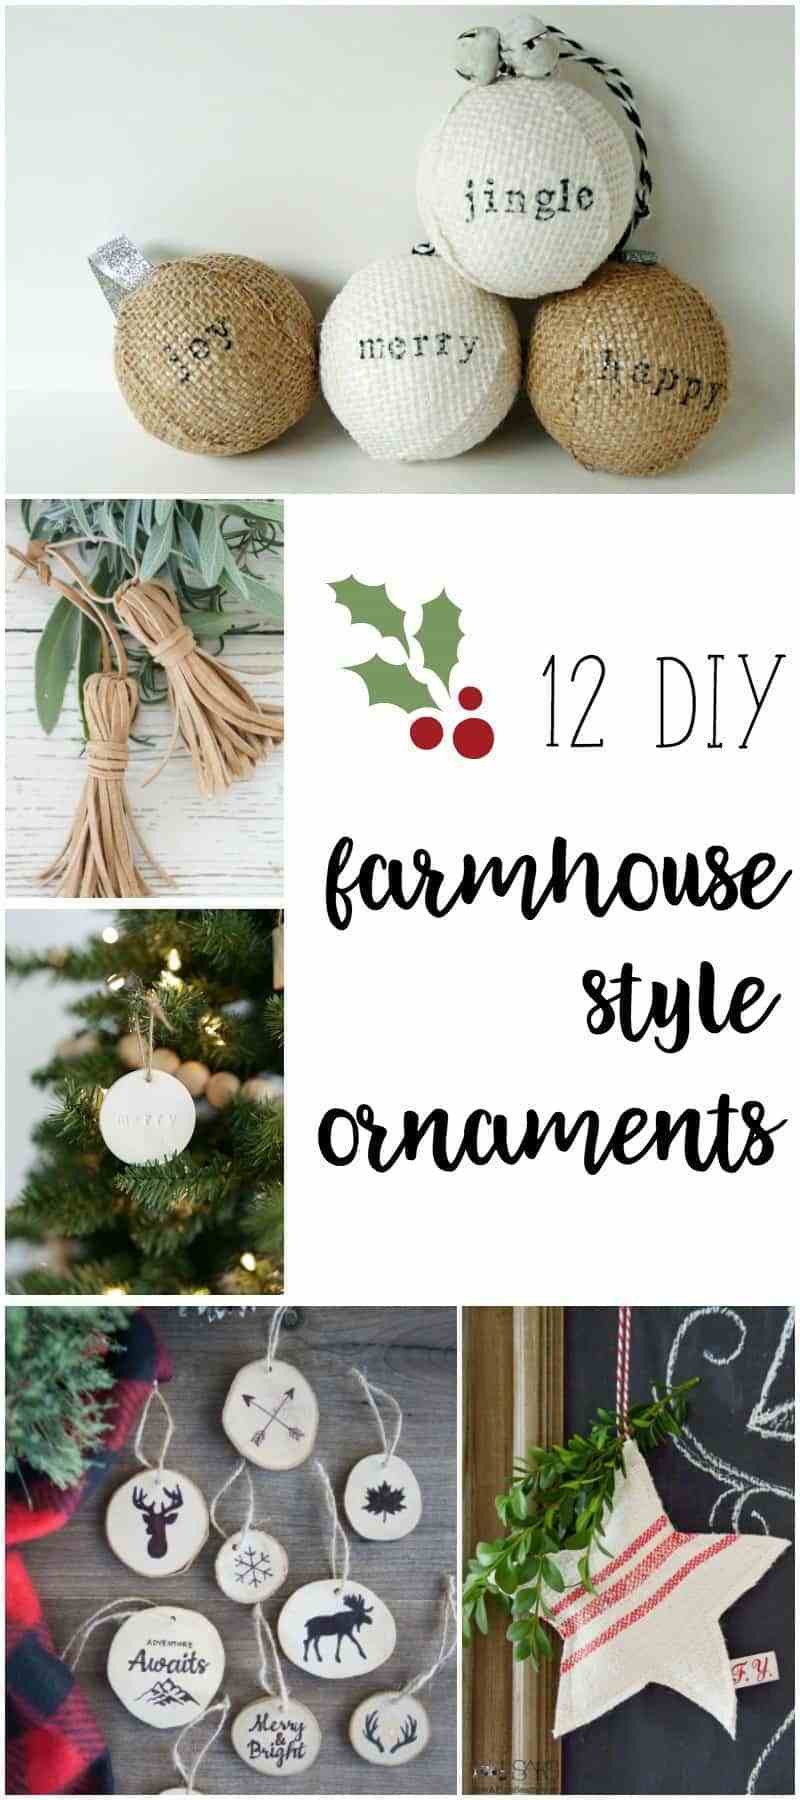 DIY Christmas Ornaments Pinterest
 Farmhouse Style Ornaments for Christmas